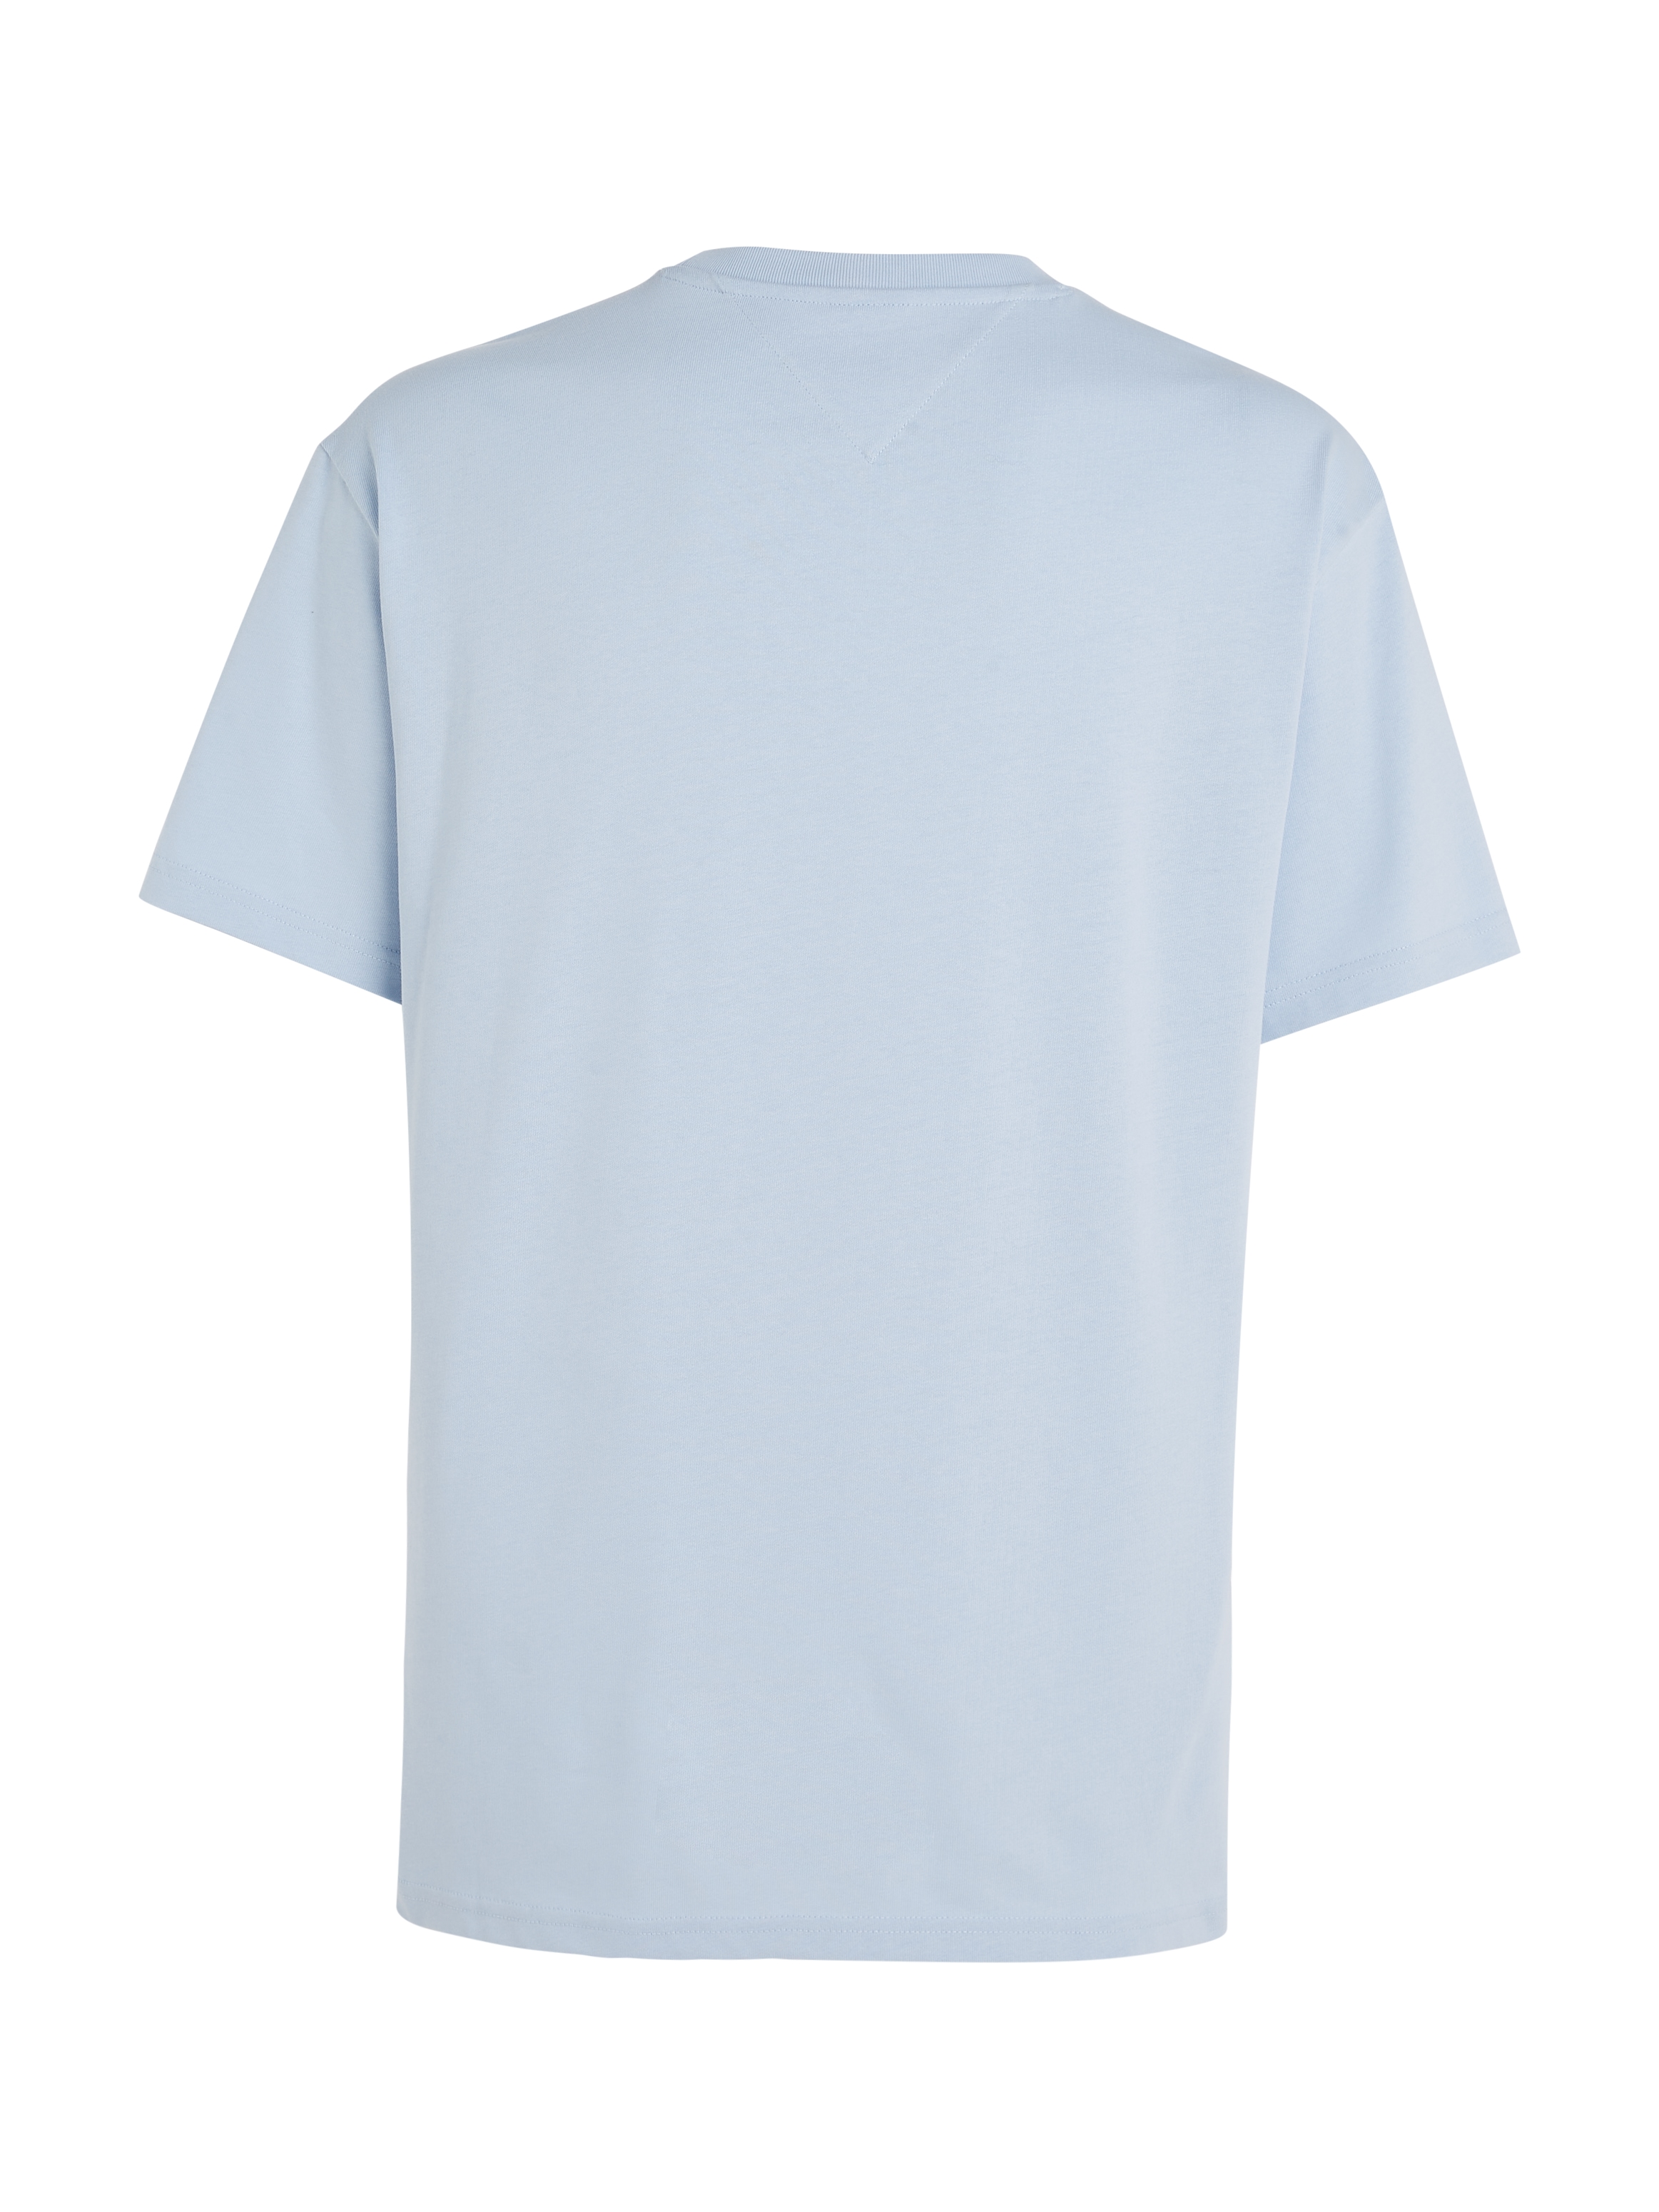 Tommy Jeans T-Shirt »TJM REG S NEW CLASSICS TEE EXT«, mit Rundhalsausschnitt